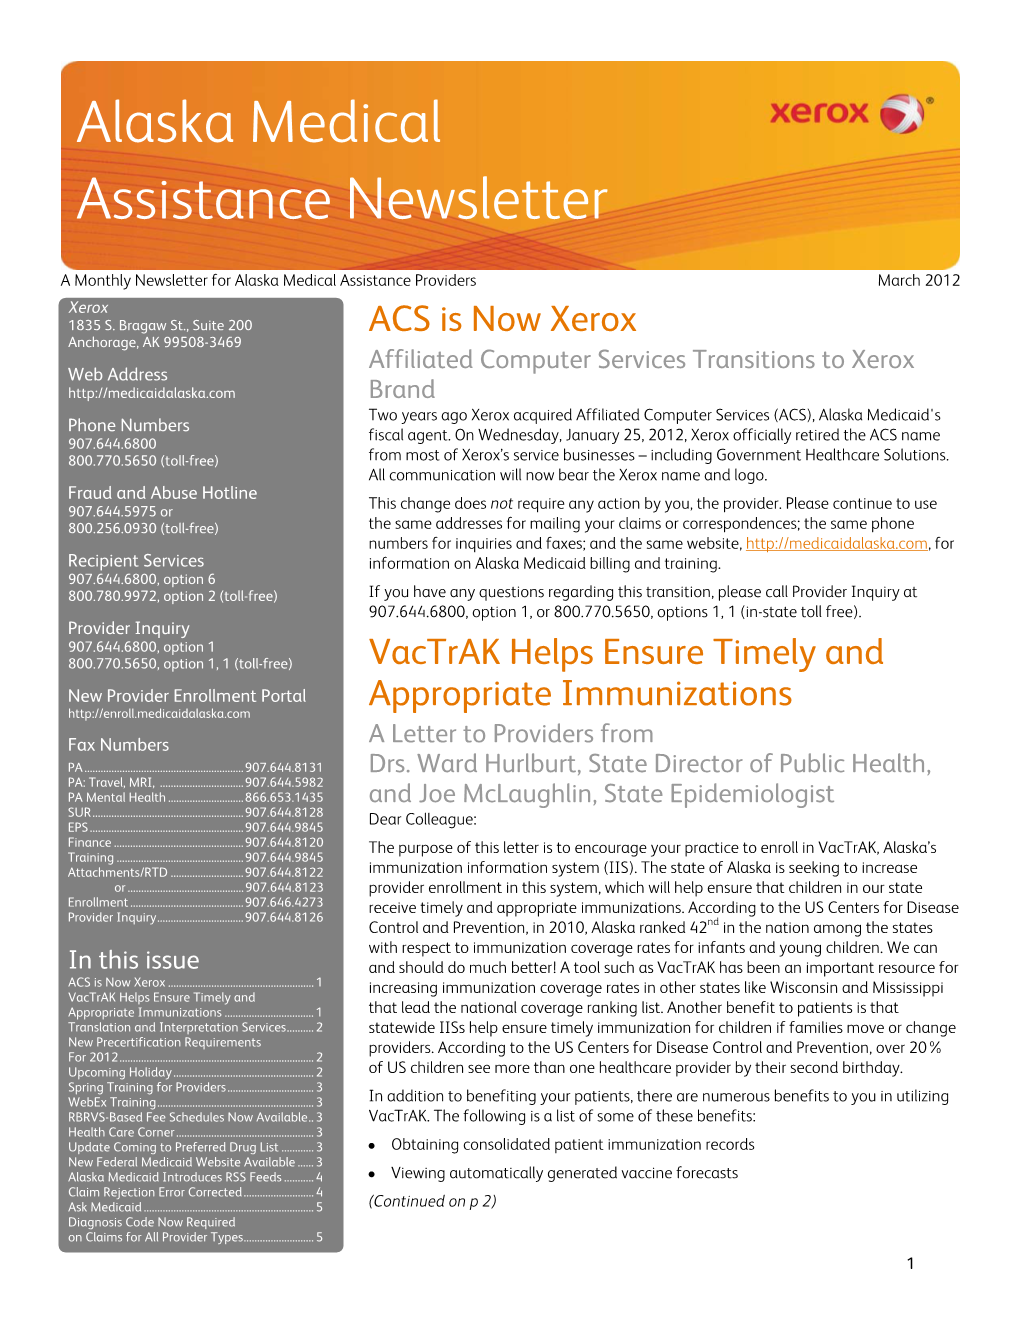 Alaska Medical Assistance Newsletter